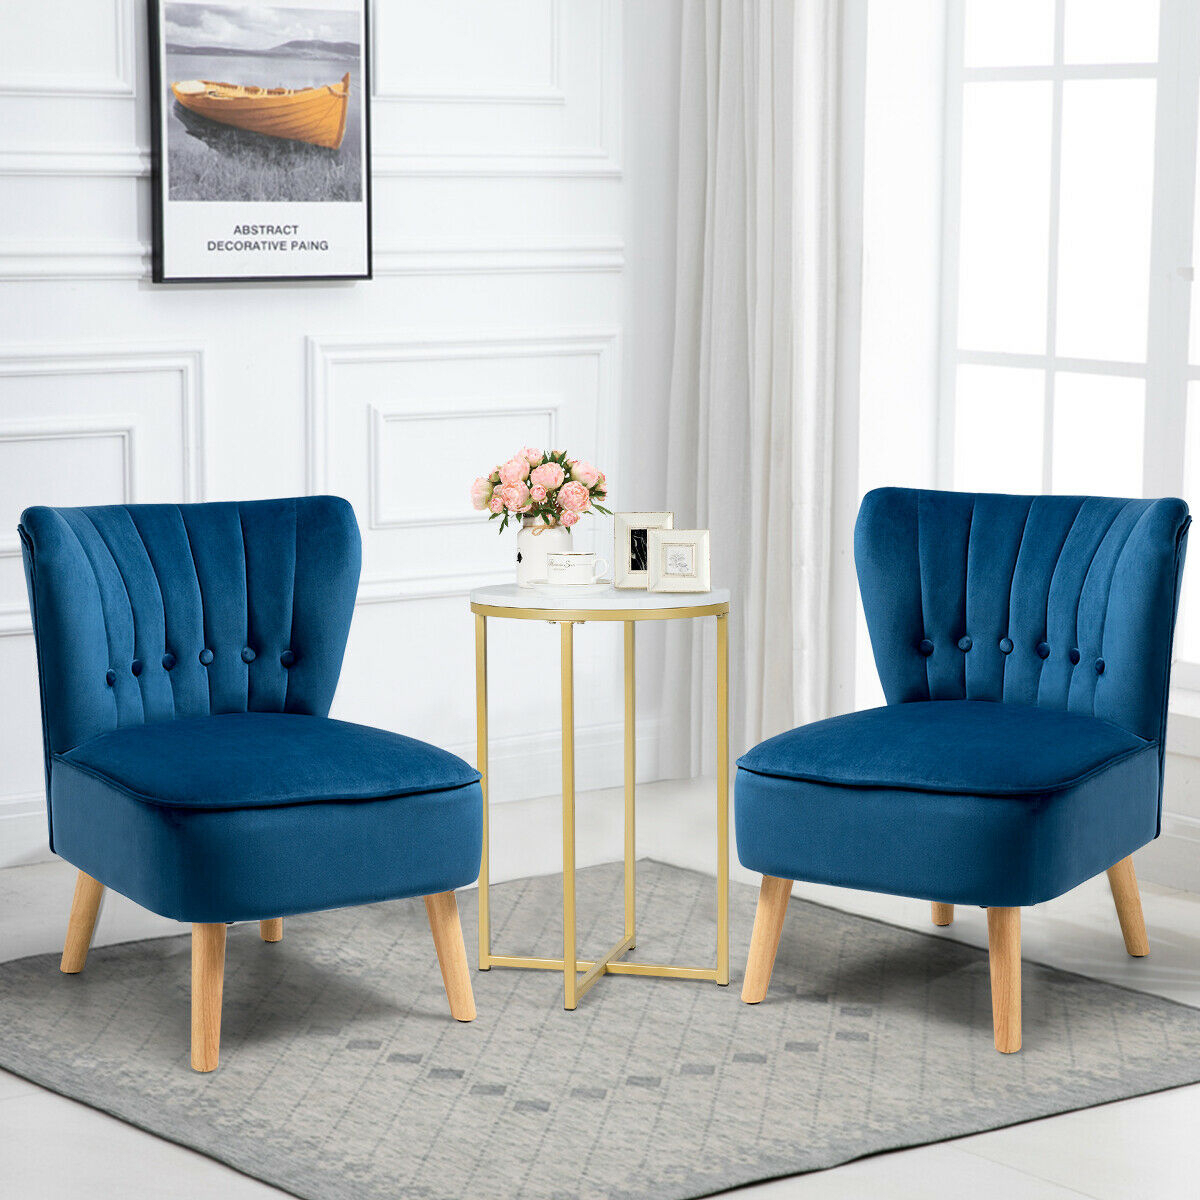 2PCS Accent Chair Armless Leisure Chair Single Sofa W/ Wood Legs Blue